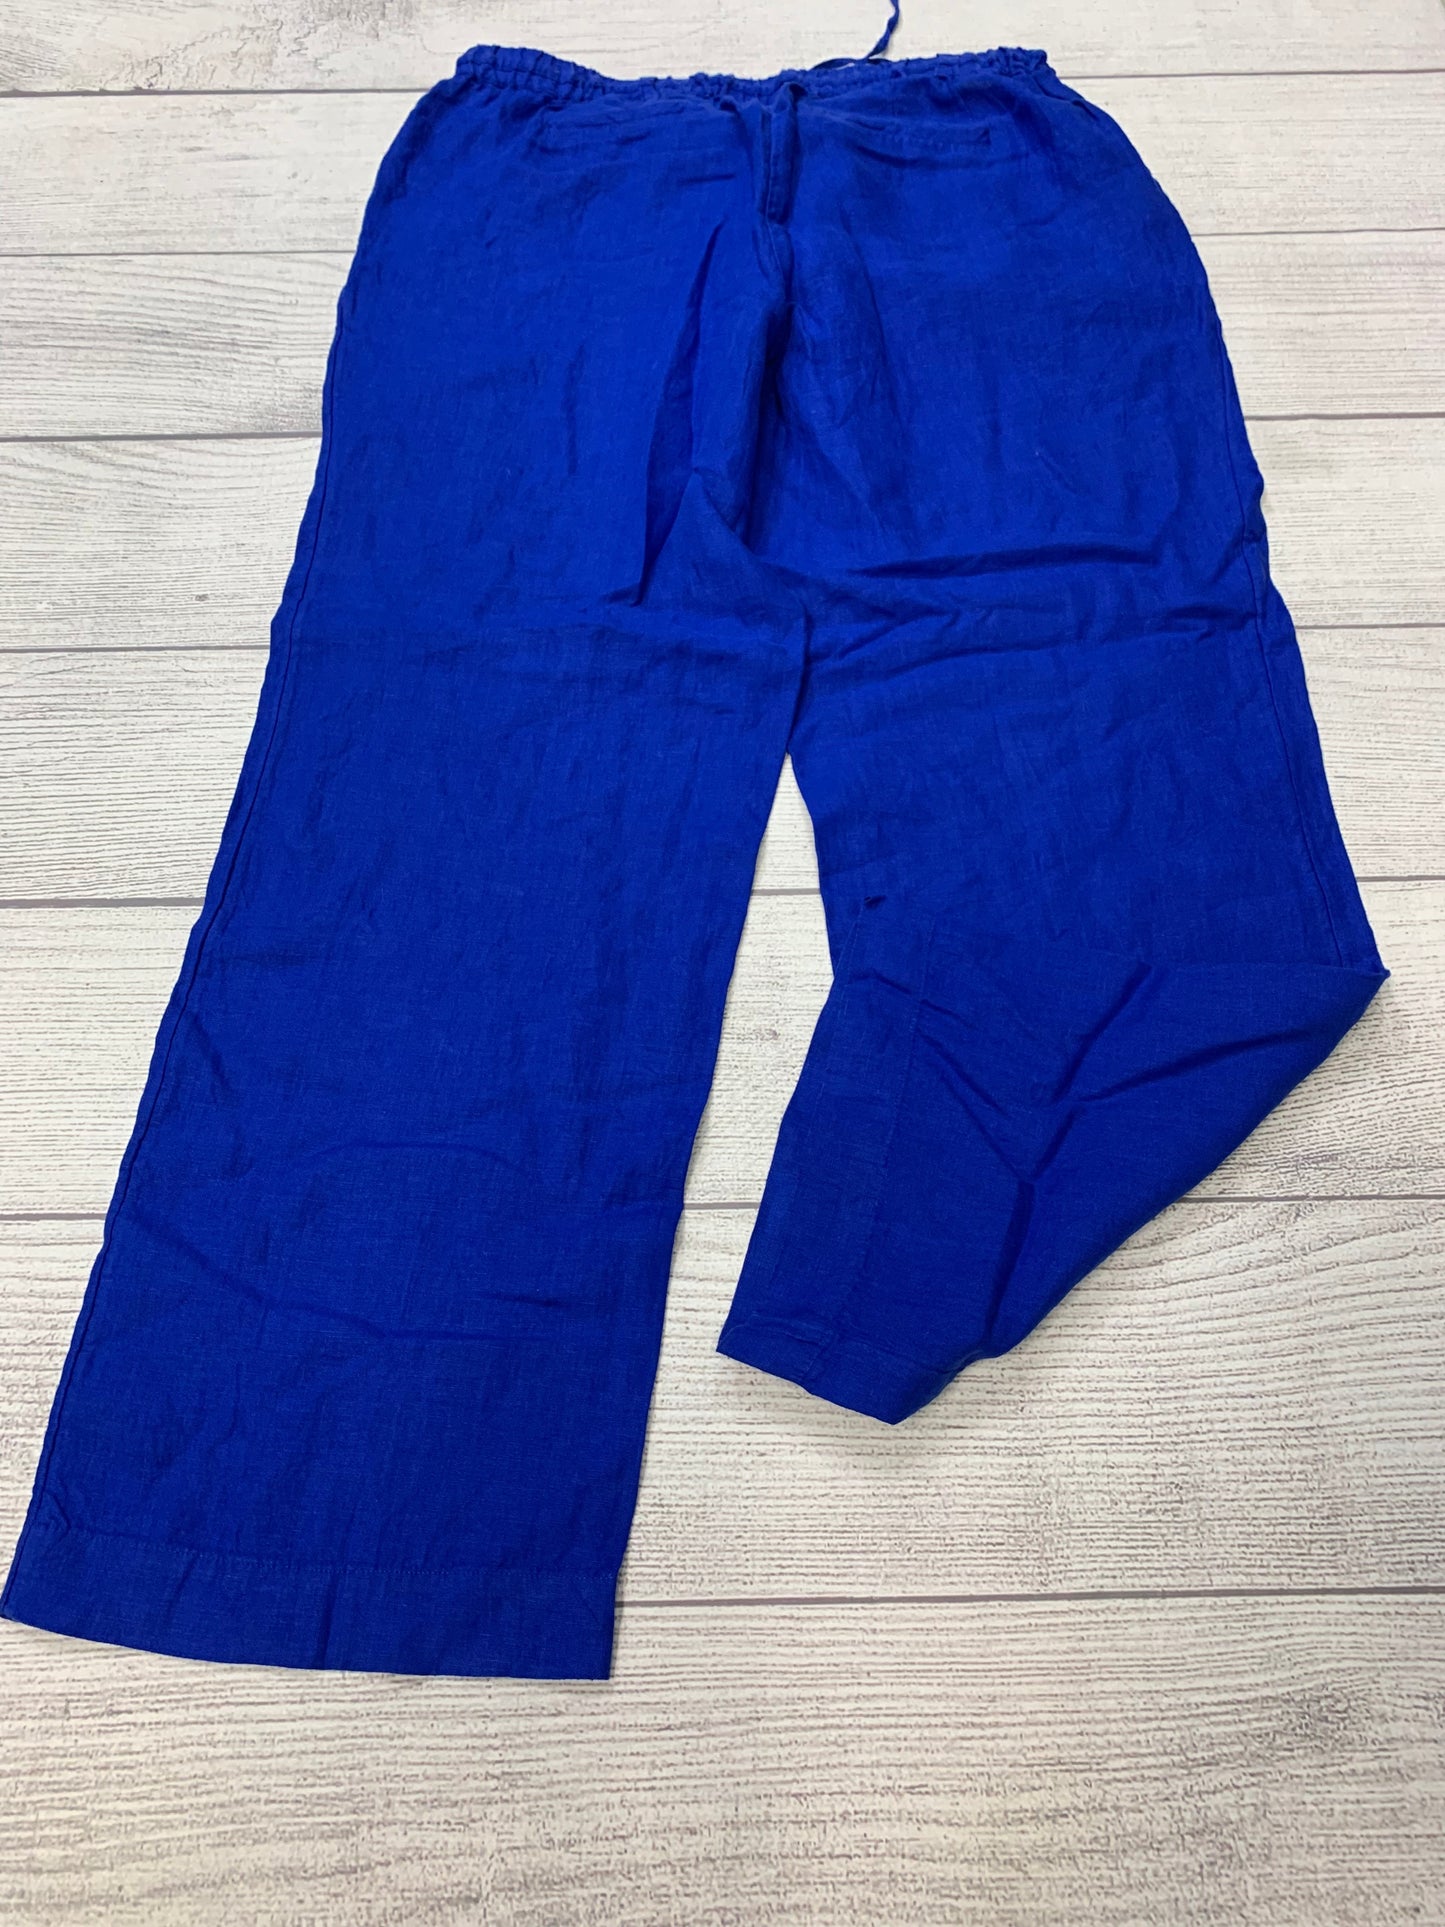 Blue Pants Linen Charter Club, Size L